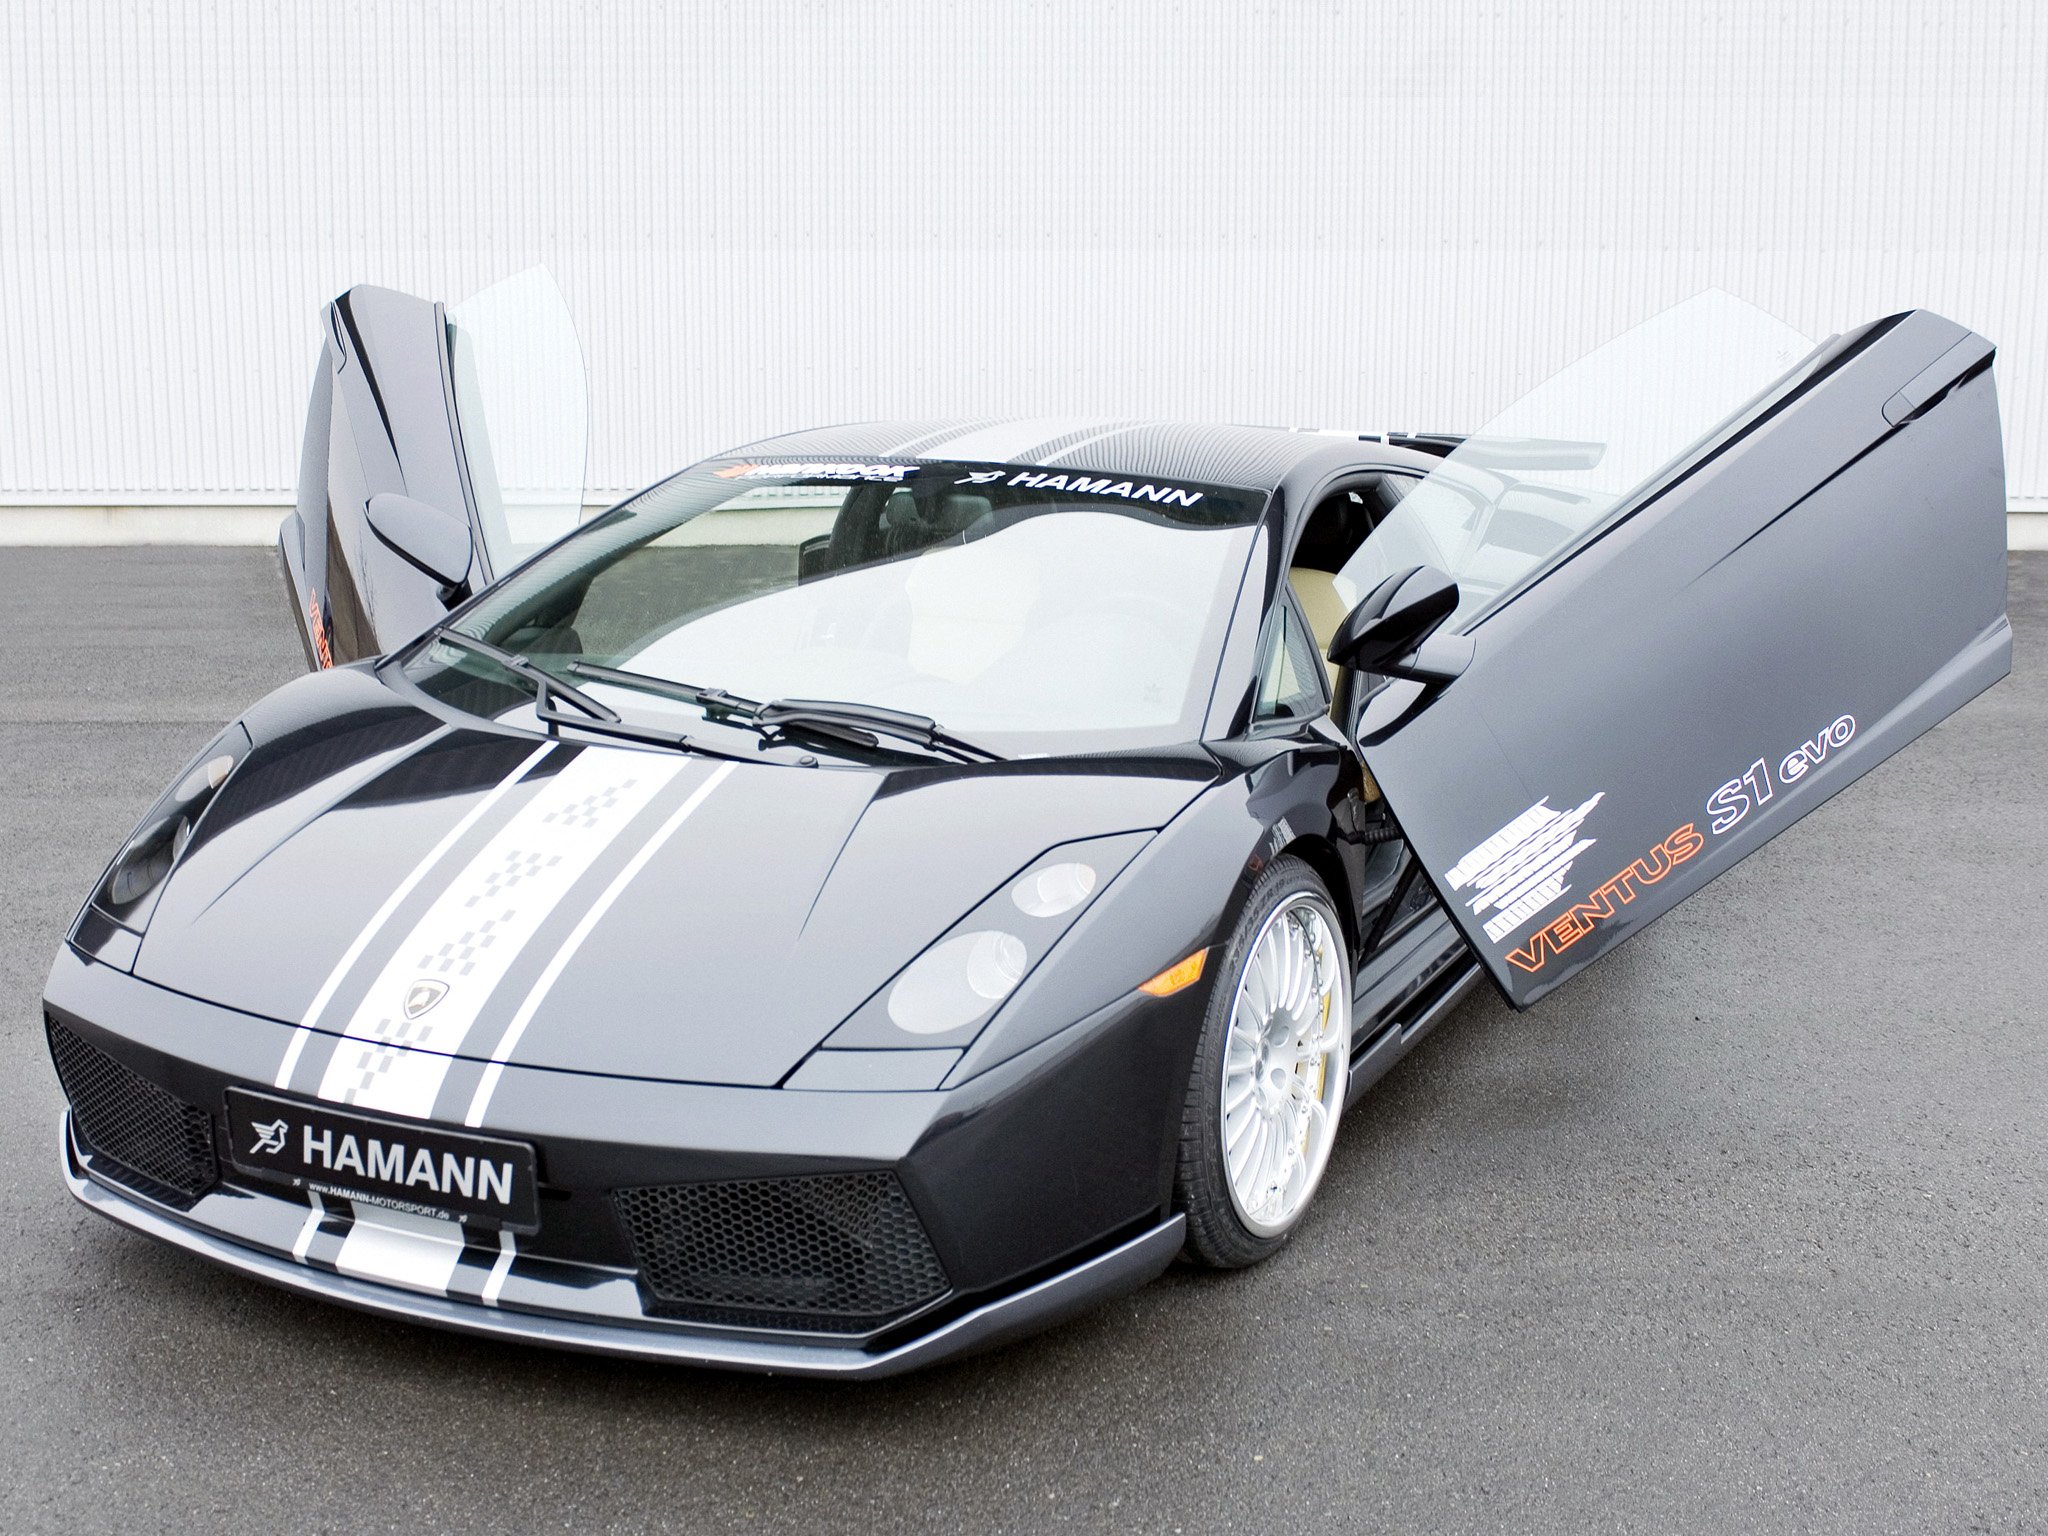 hamann, Lamborghini, Gallardo, Cars, Modified, 2004 Wallpaper